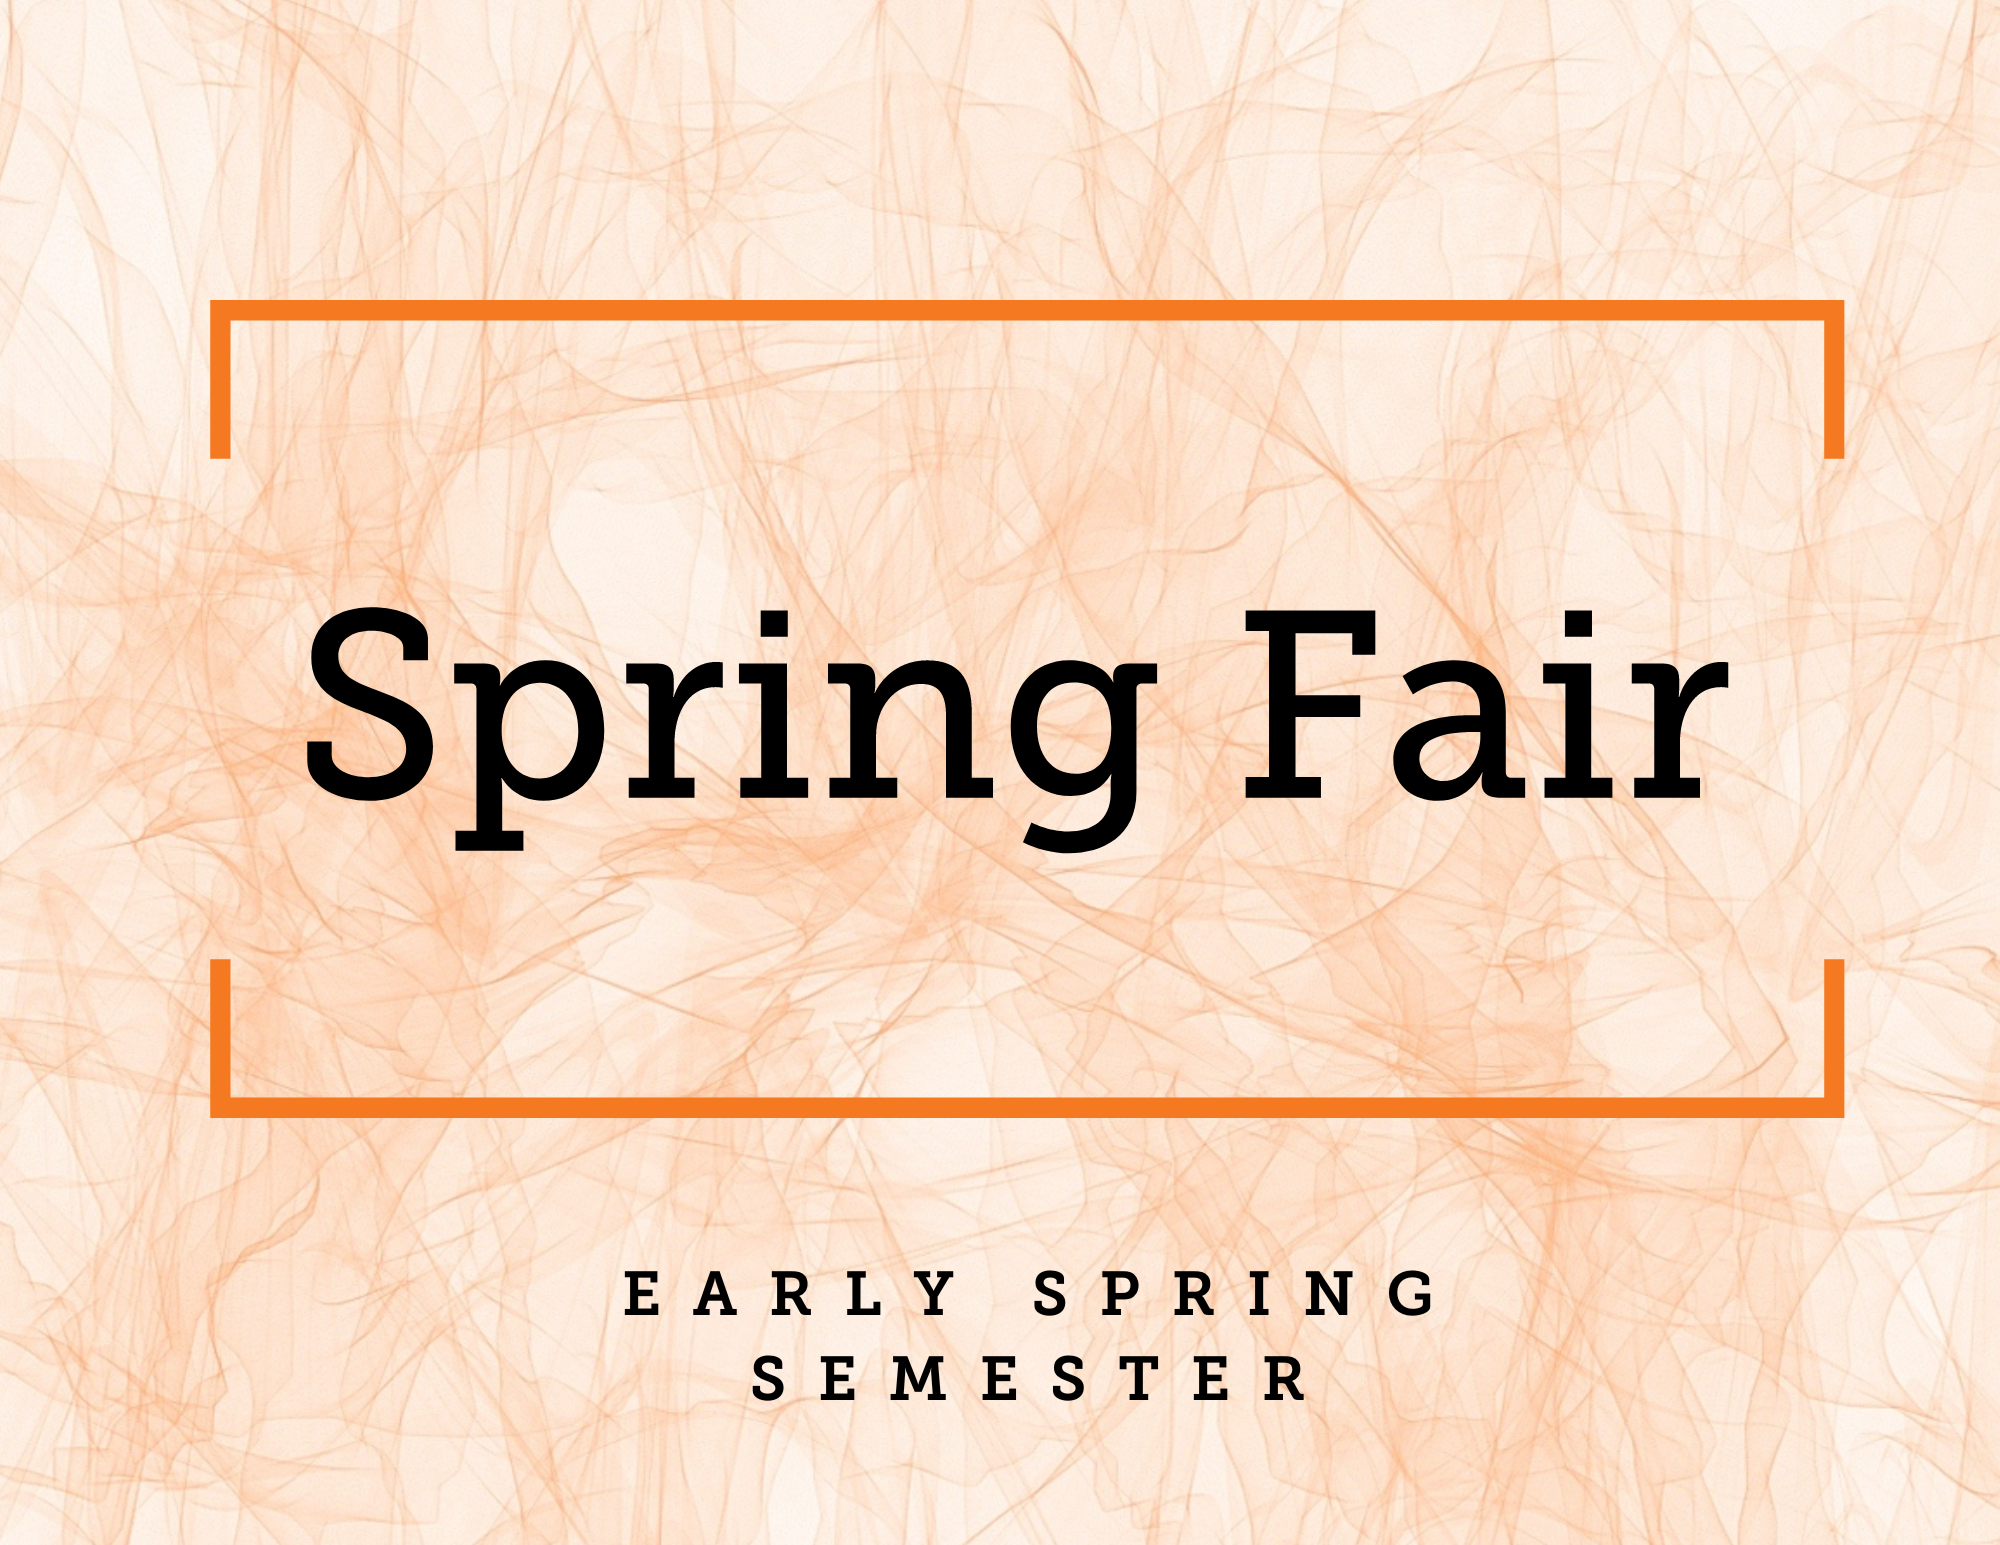 Spring Fair - Early spring semester